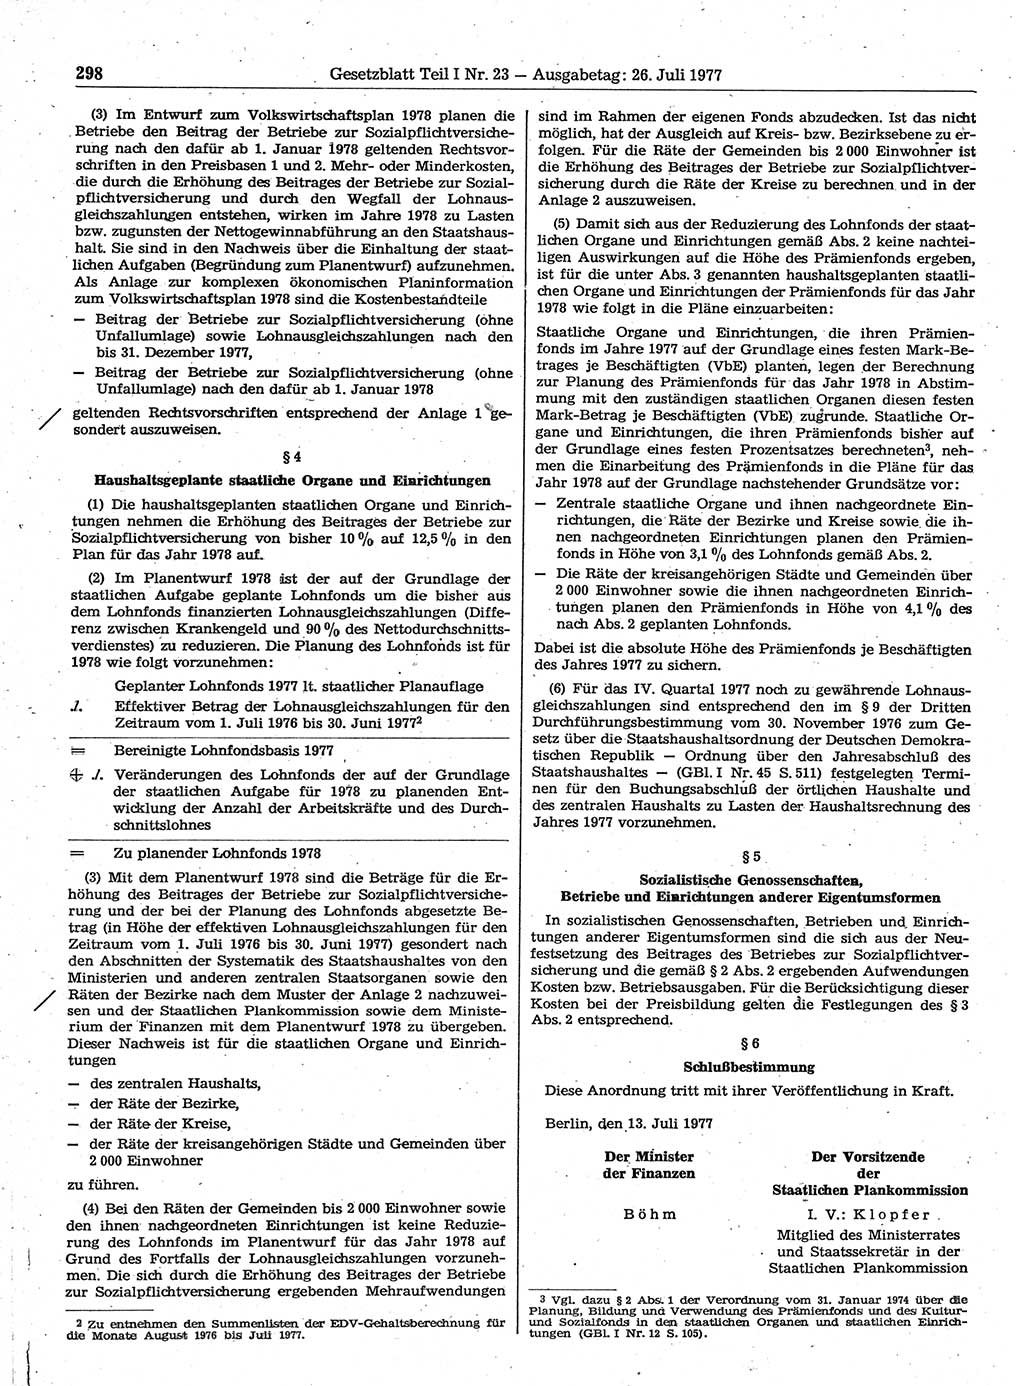 Gesetzblatt (GBl.) der Deutschen Demokratischen Republik (DDR) Teil Ⅰ 1977, Seite 298 (GBl. DDR Ⅰ 1977, S. 298)